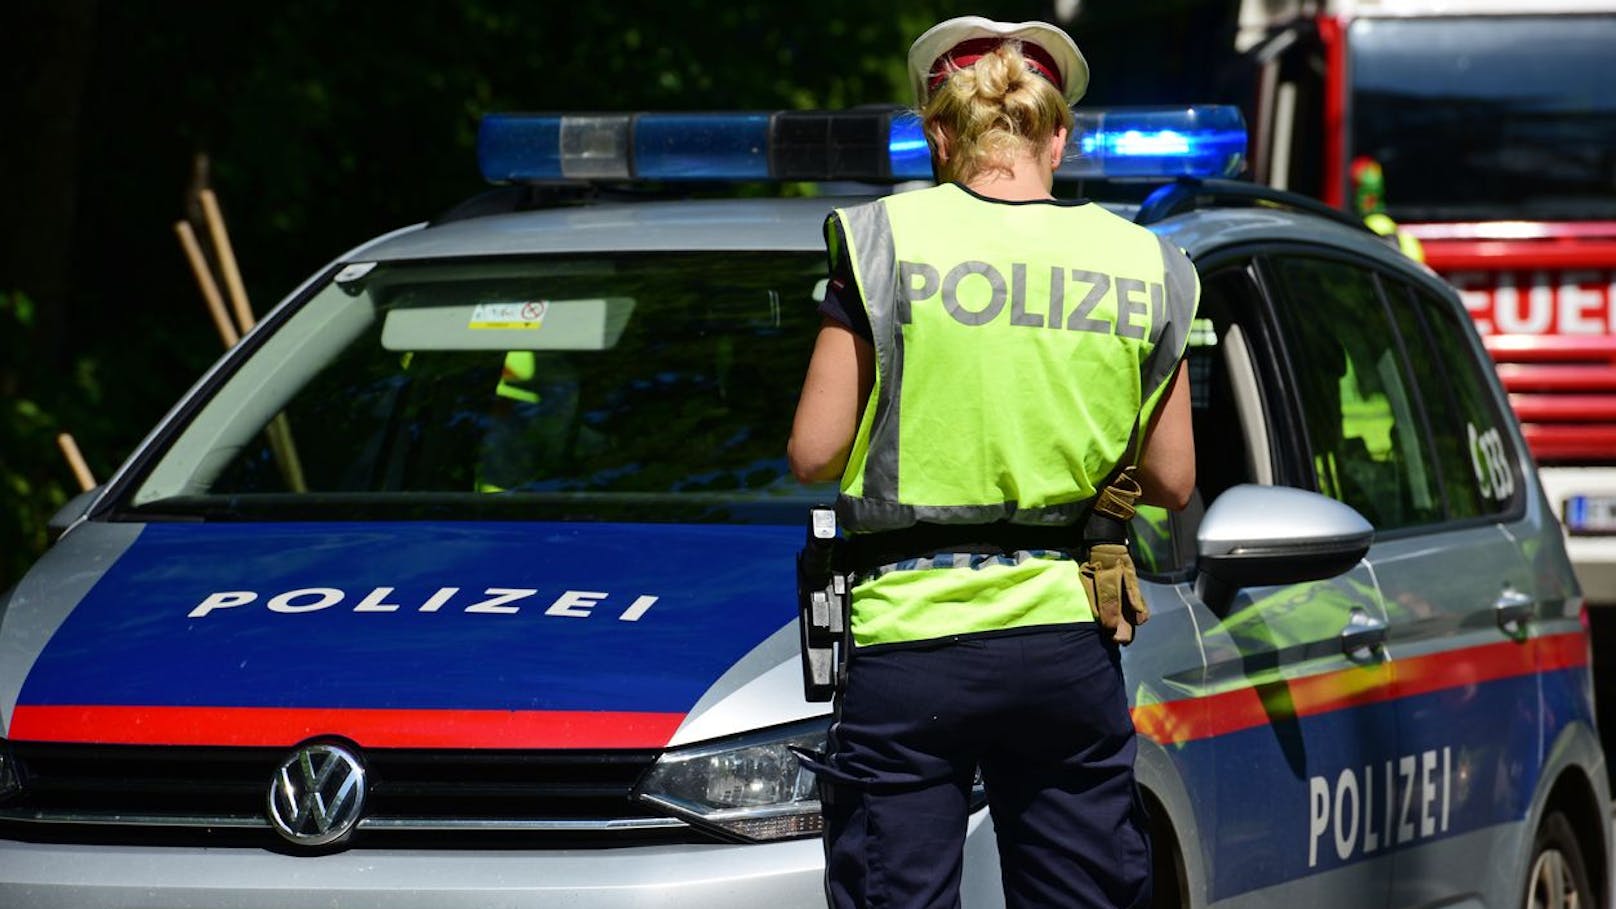 Polizisten helfen Frau – sie dichtet ihnen Diebstahl an